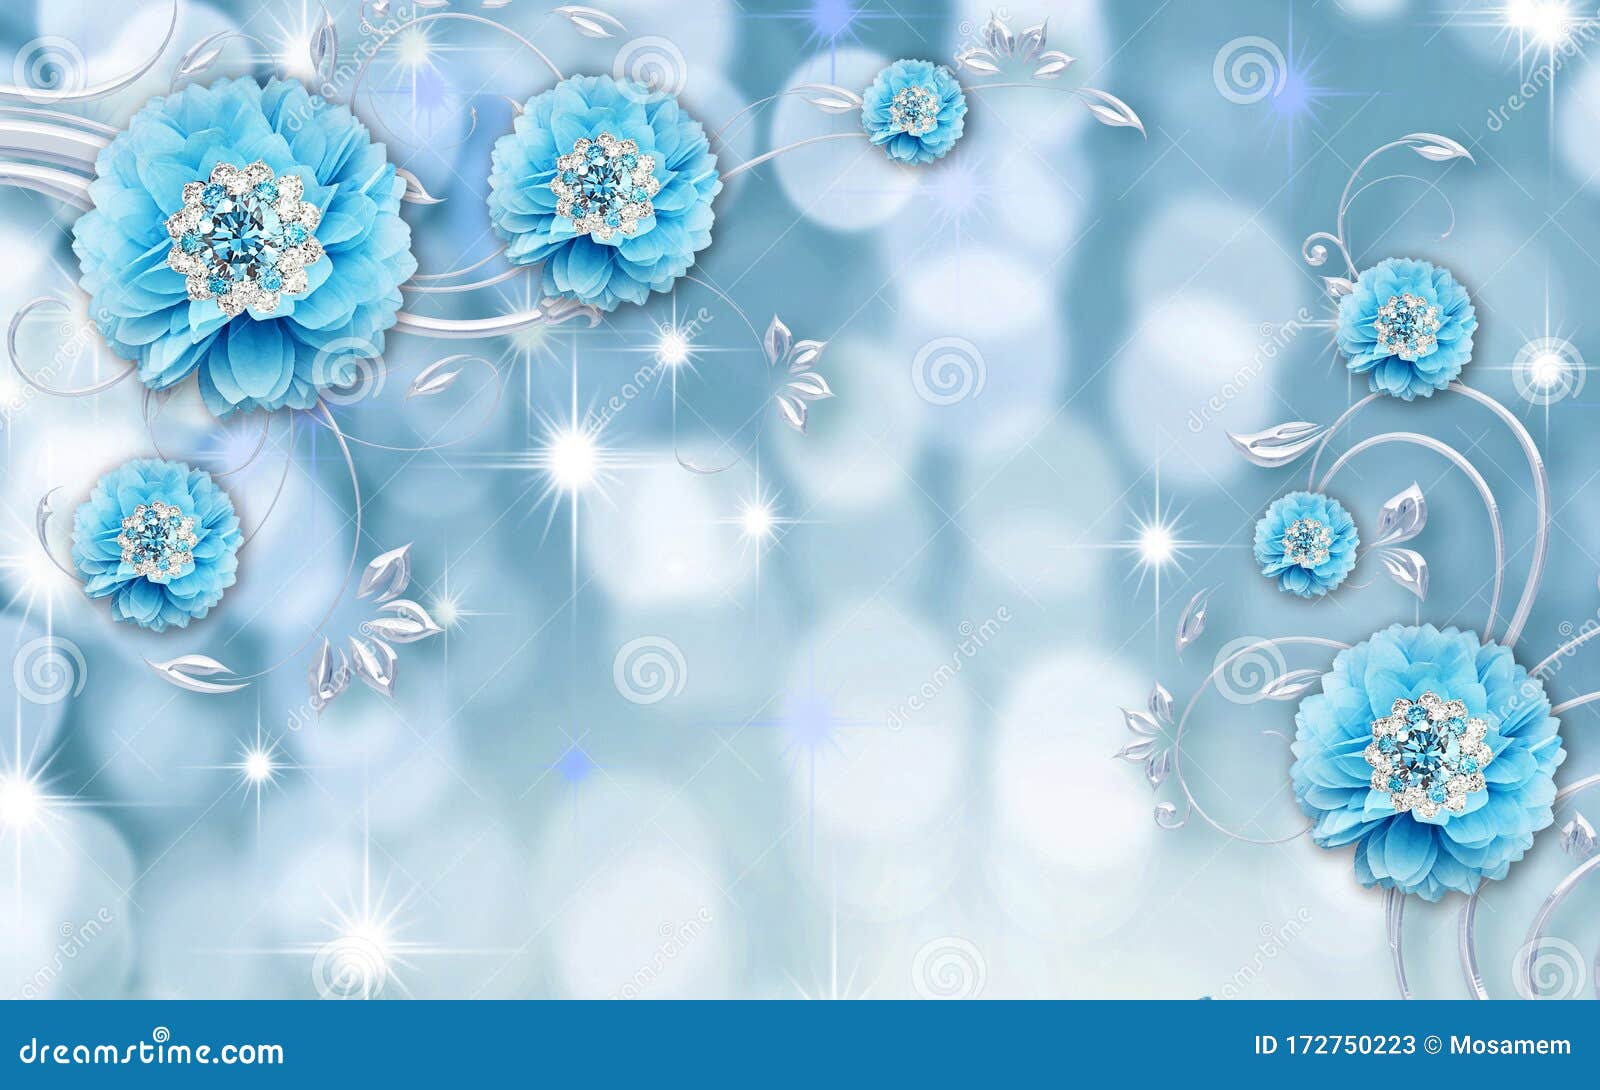 Giấy dán tường màu xanh dương với hoa trang trí rực rỡ và những viên kim cương lấp lánh thật sự là sự lựa chọn tinh tế và đáng yêu cho không gian của bạn. Hãy xem chi tiết để trang trí ngôi nhà của bạn thật đẹp nhé.